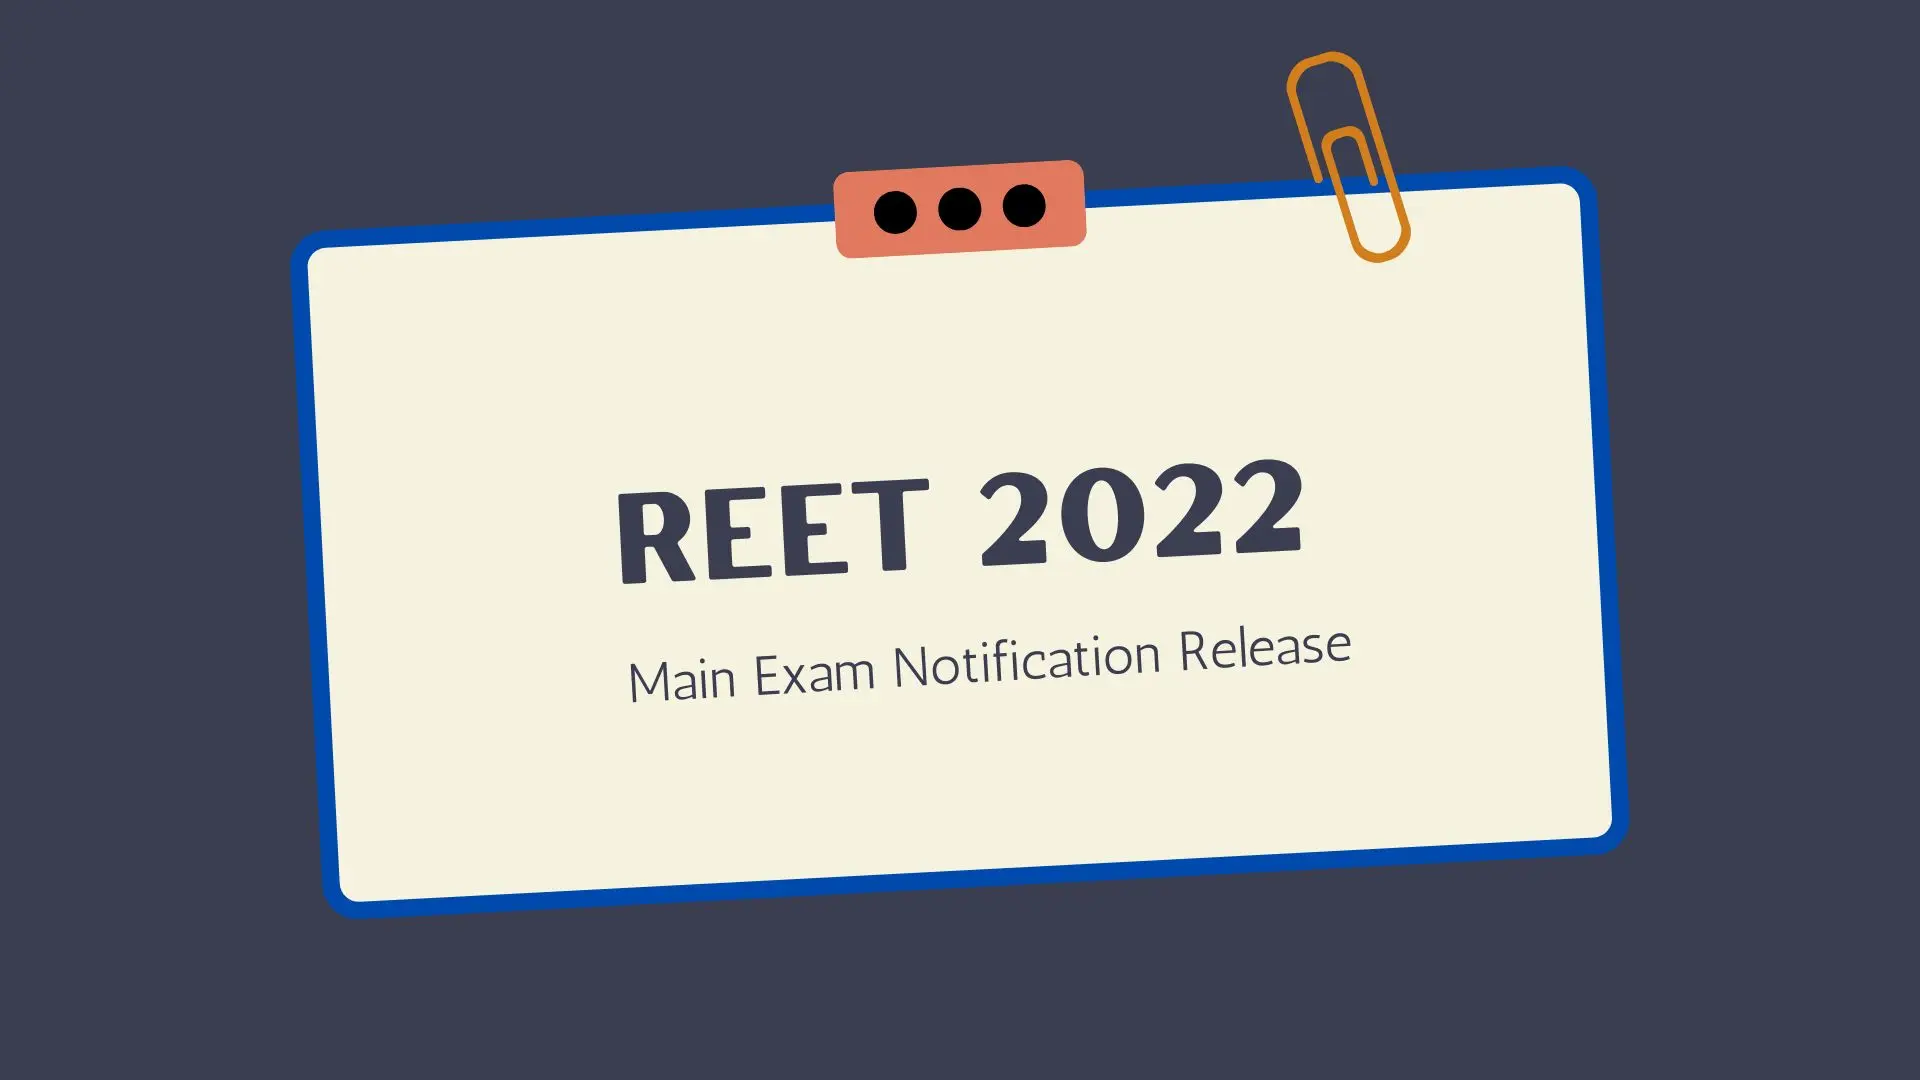 REET 2022 Main Exam